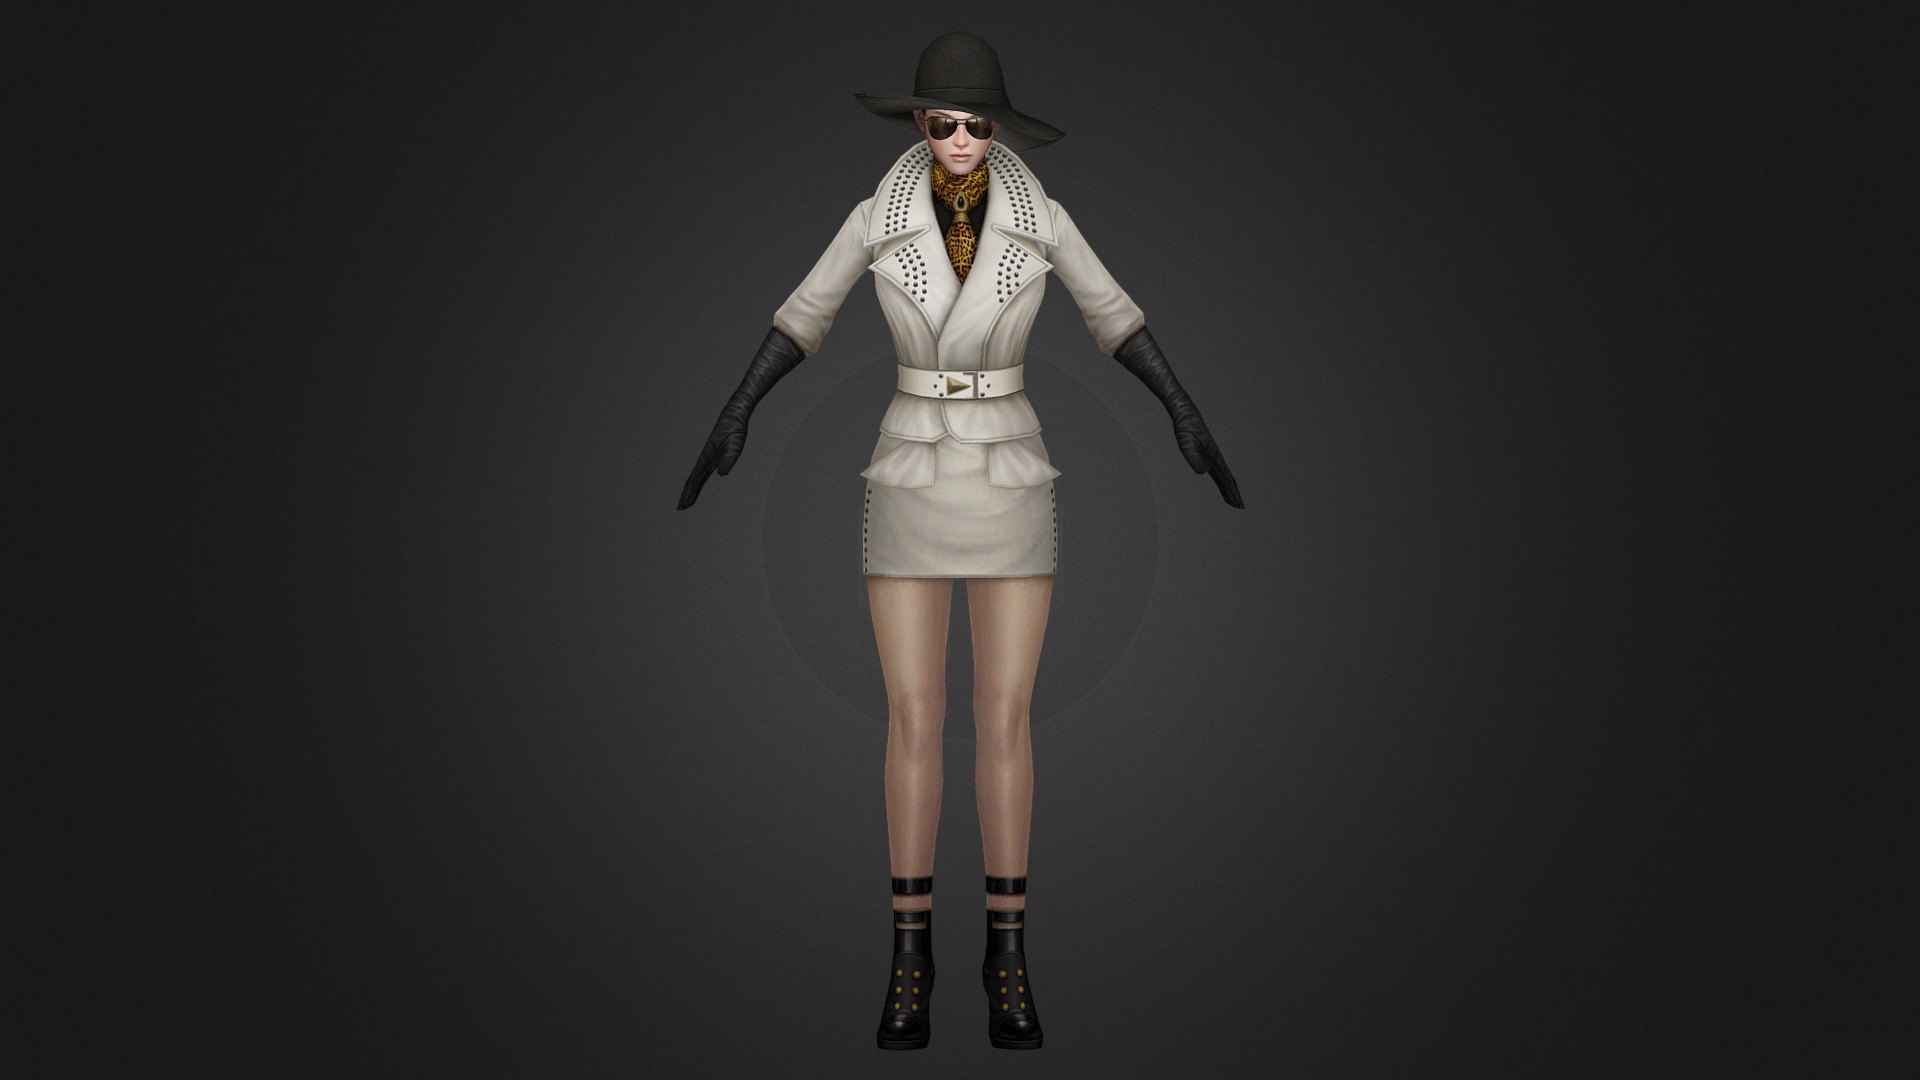 Sarah Suit - 3D model by Dimac 3d model